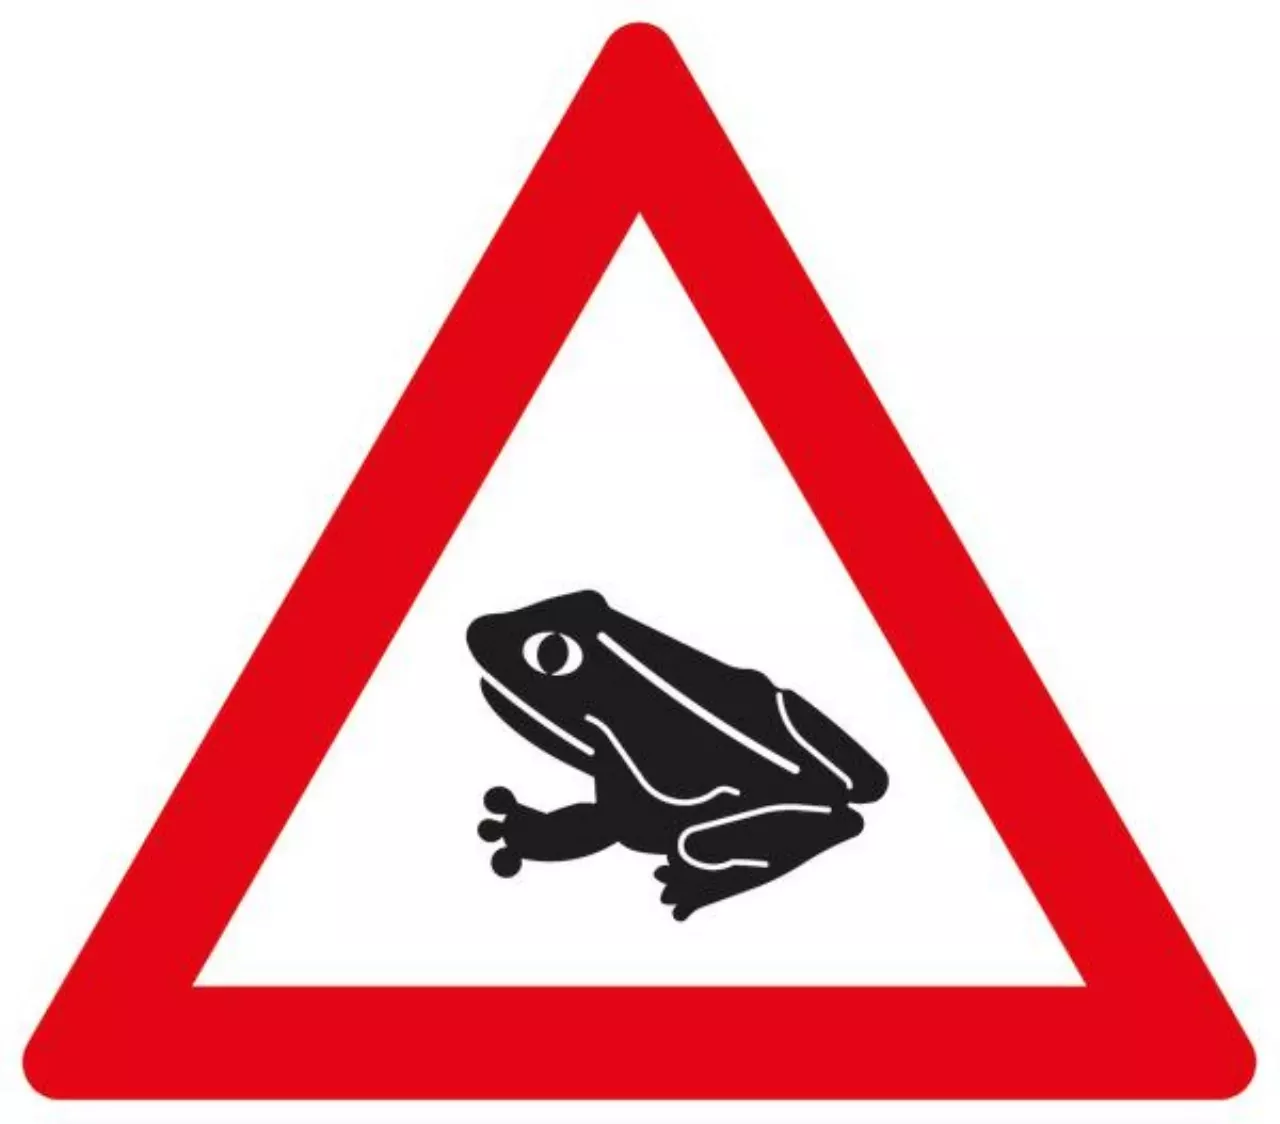 Verkehrszeichen 101-14 Amphibienwanderung, Aufstellung rechts - SL 900 2 mm RA2